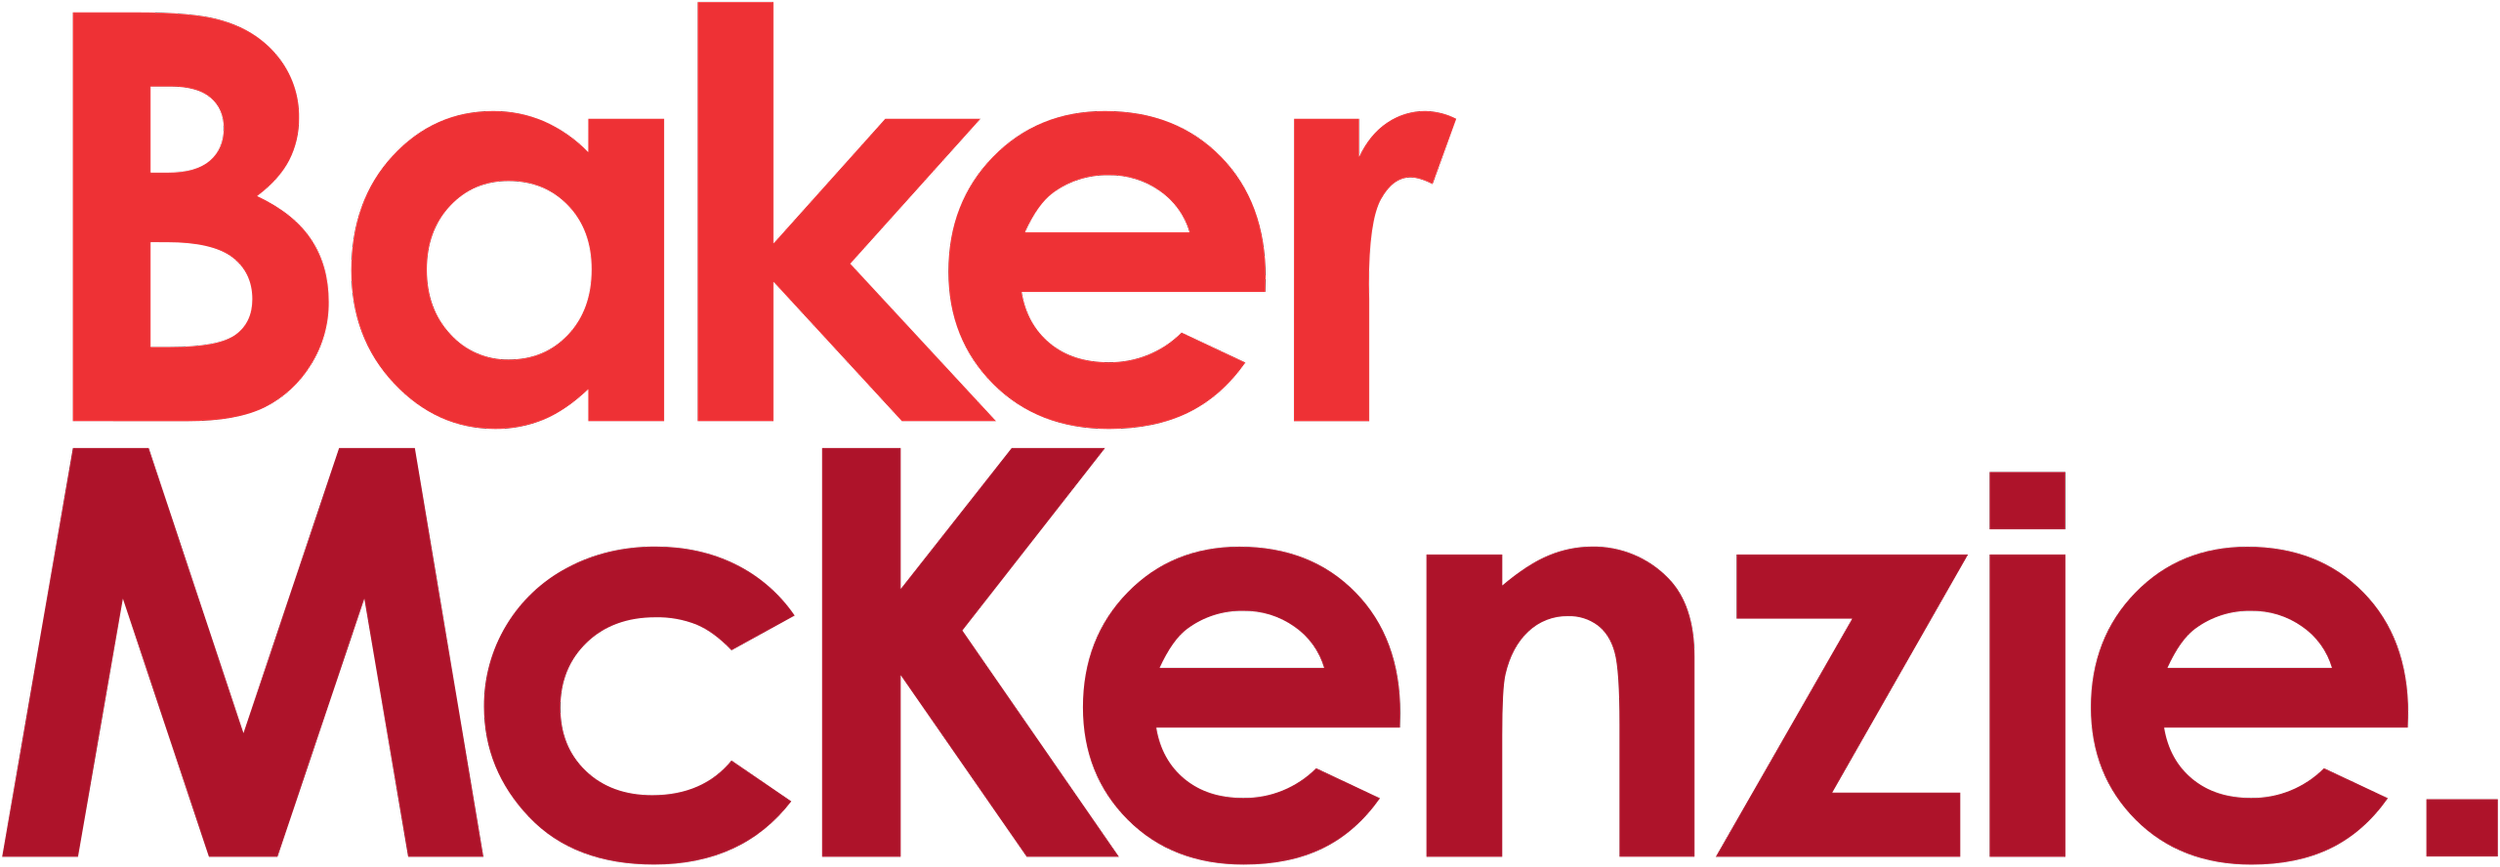 2560px-Baker_McKenzie_logo_(2016).svg.png